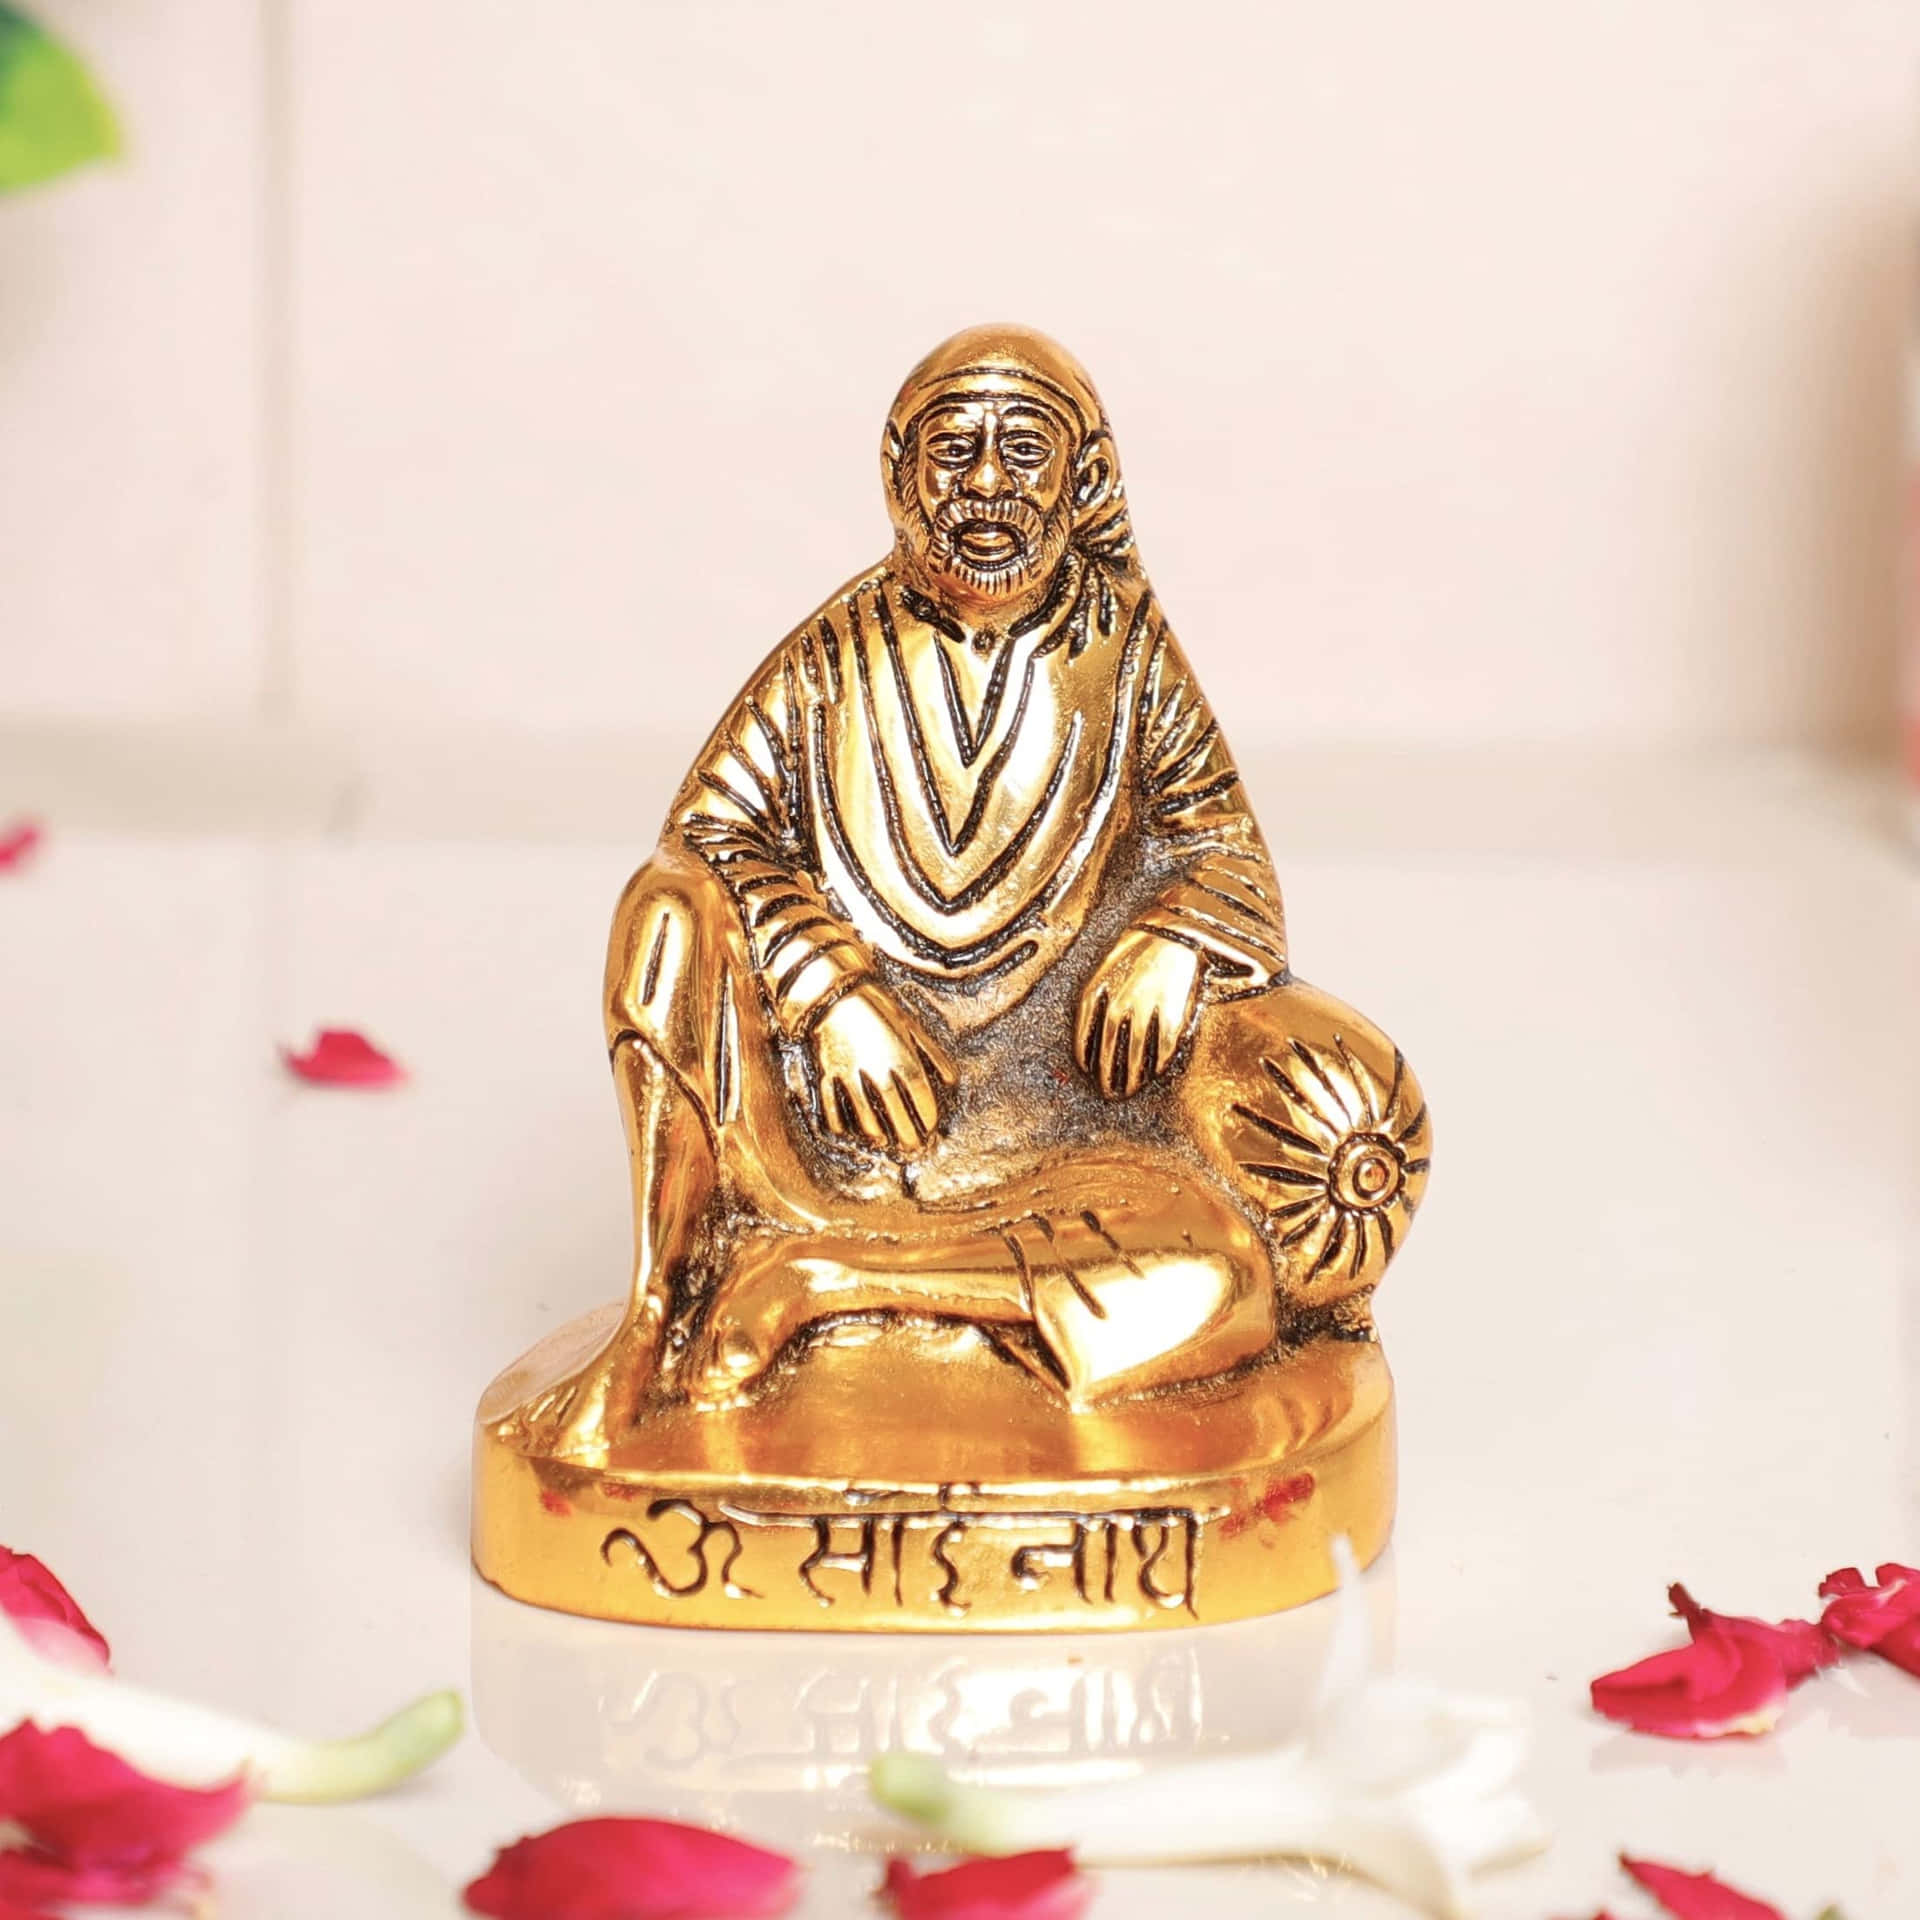 Immaginedi Fiori Petali Con Statuetta Di Sai Baba.